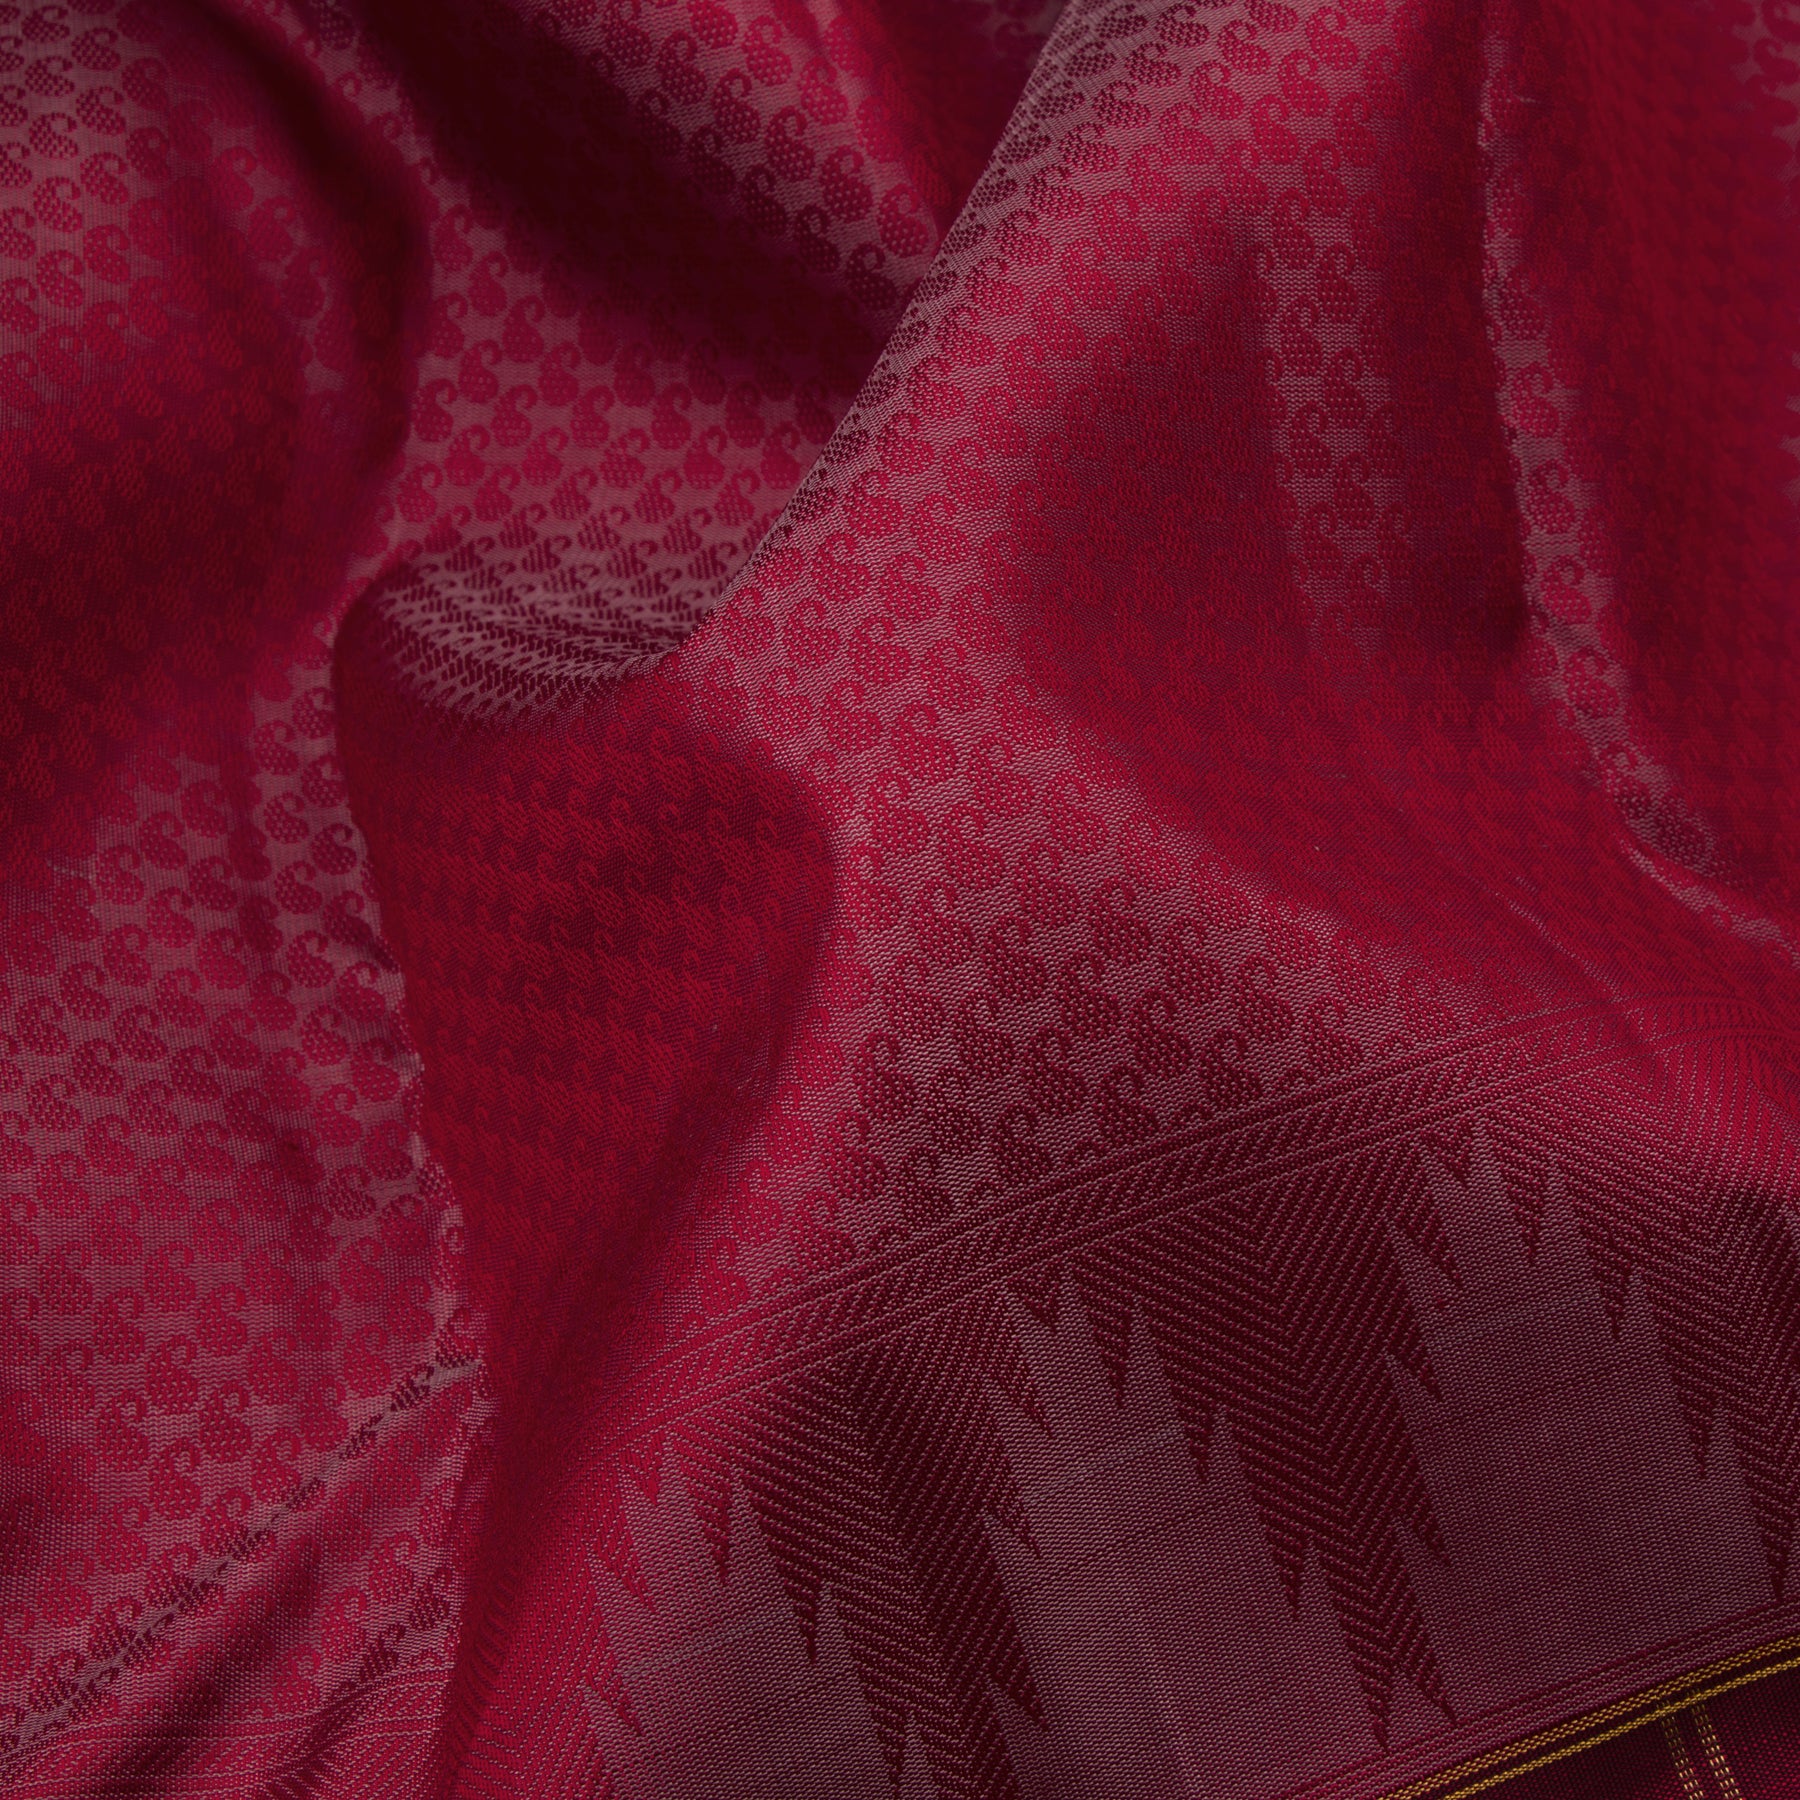 Kanakavalli Kanjivaram Silk Sari 23-599-HS001-03168 - Fabric View